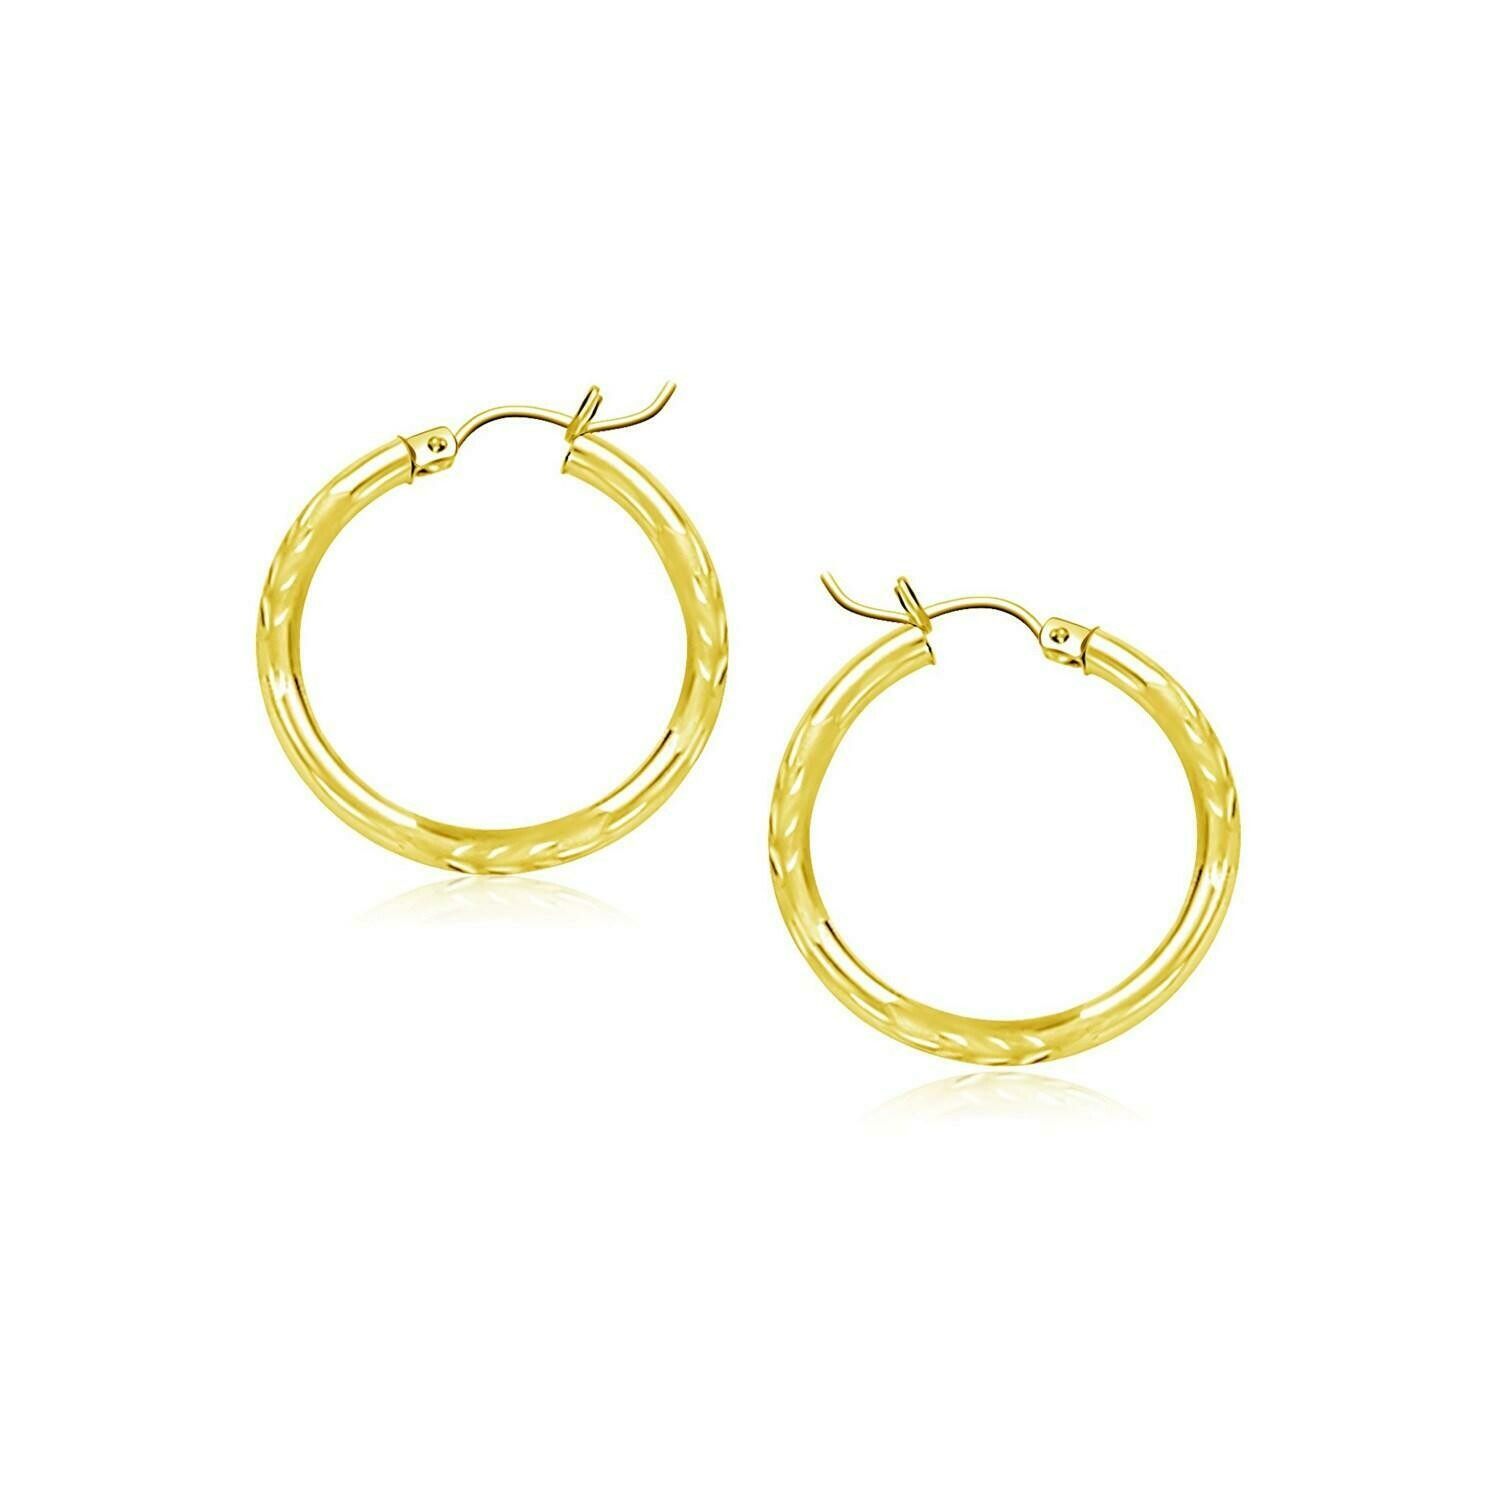 14k Yellow Gold Fancy Diamond Cut Slender Small Hoop Earrings (15mm Diameter)